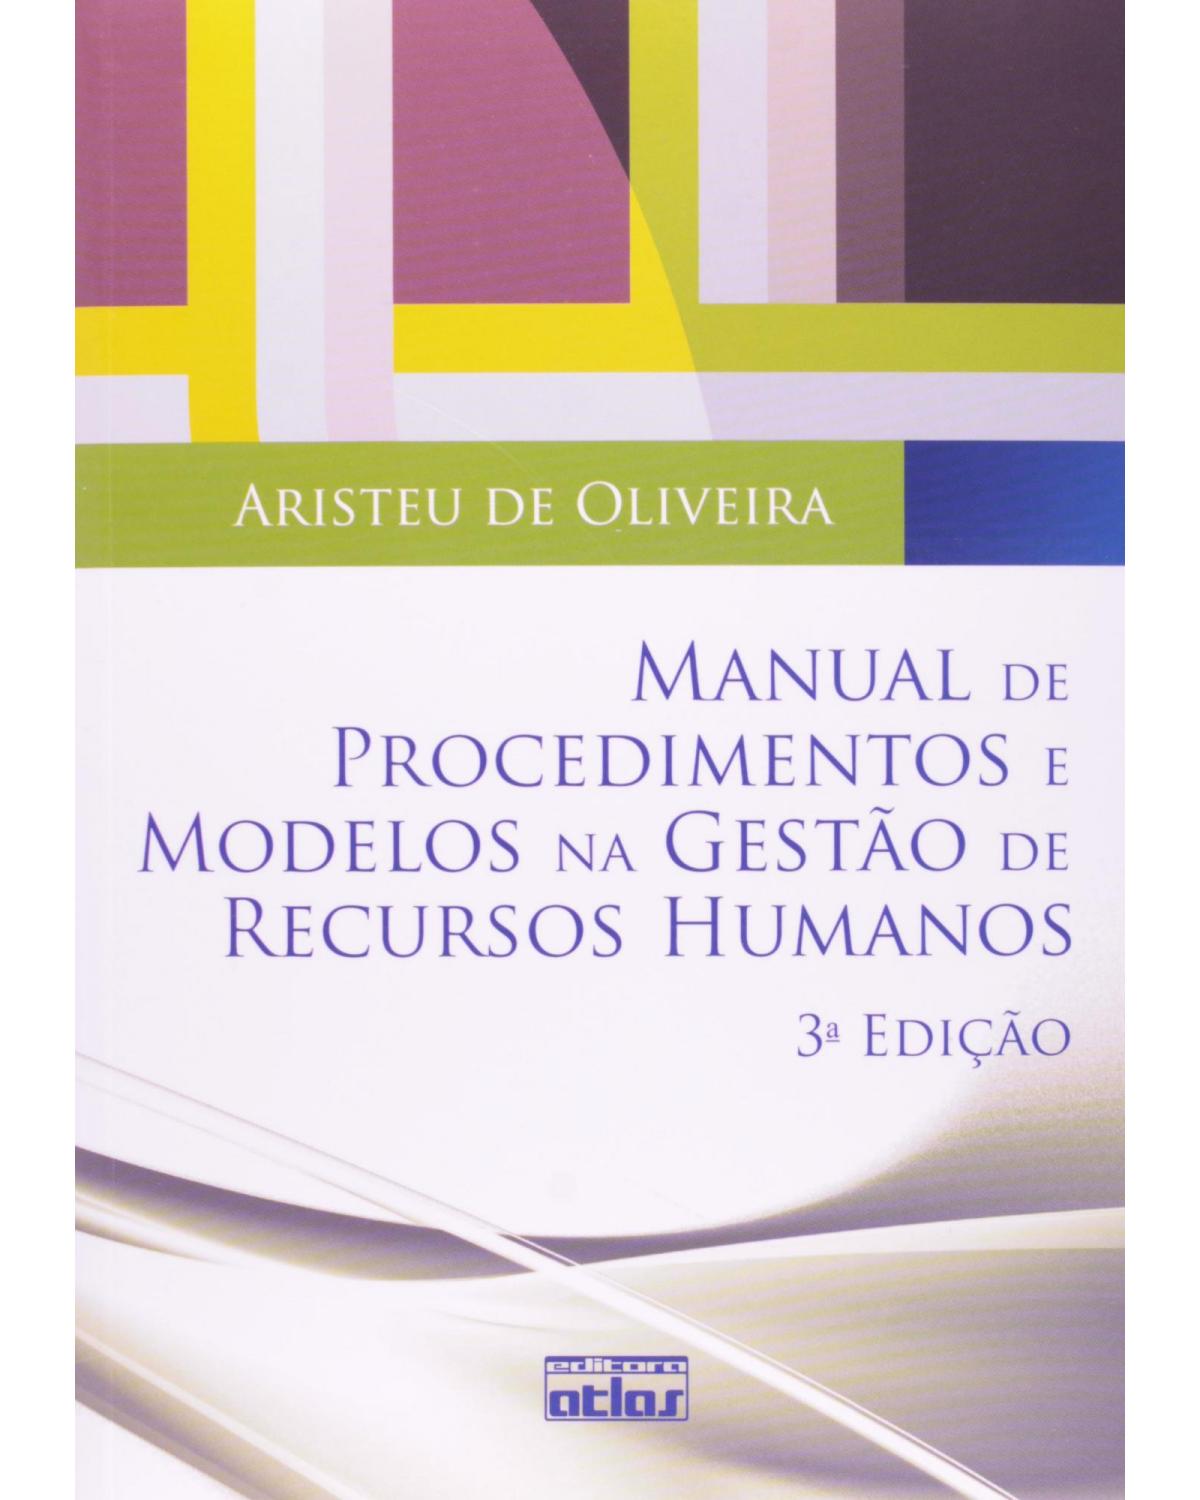 Manual de procedimentos e modelos na gestão de recursos humanos - 3ª Edição | 2010